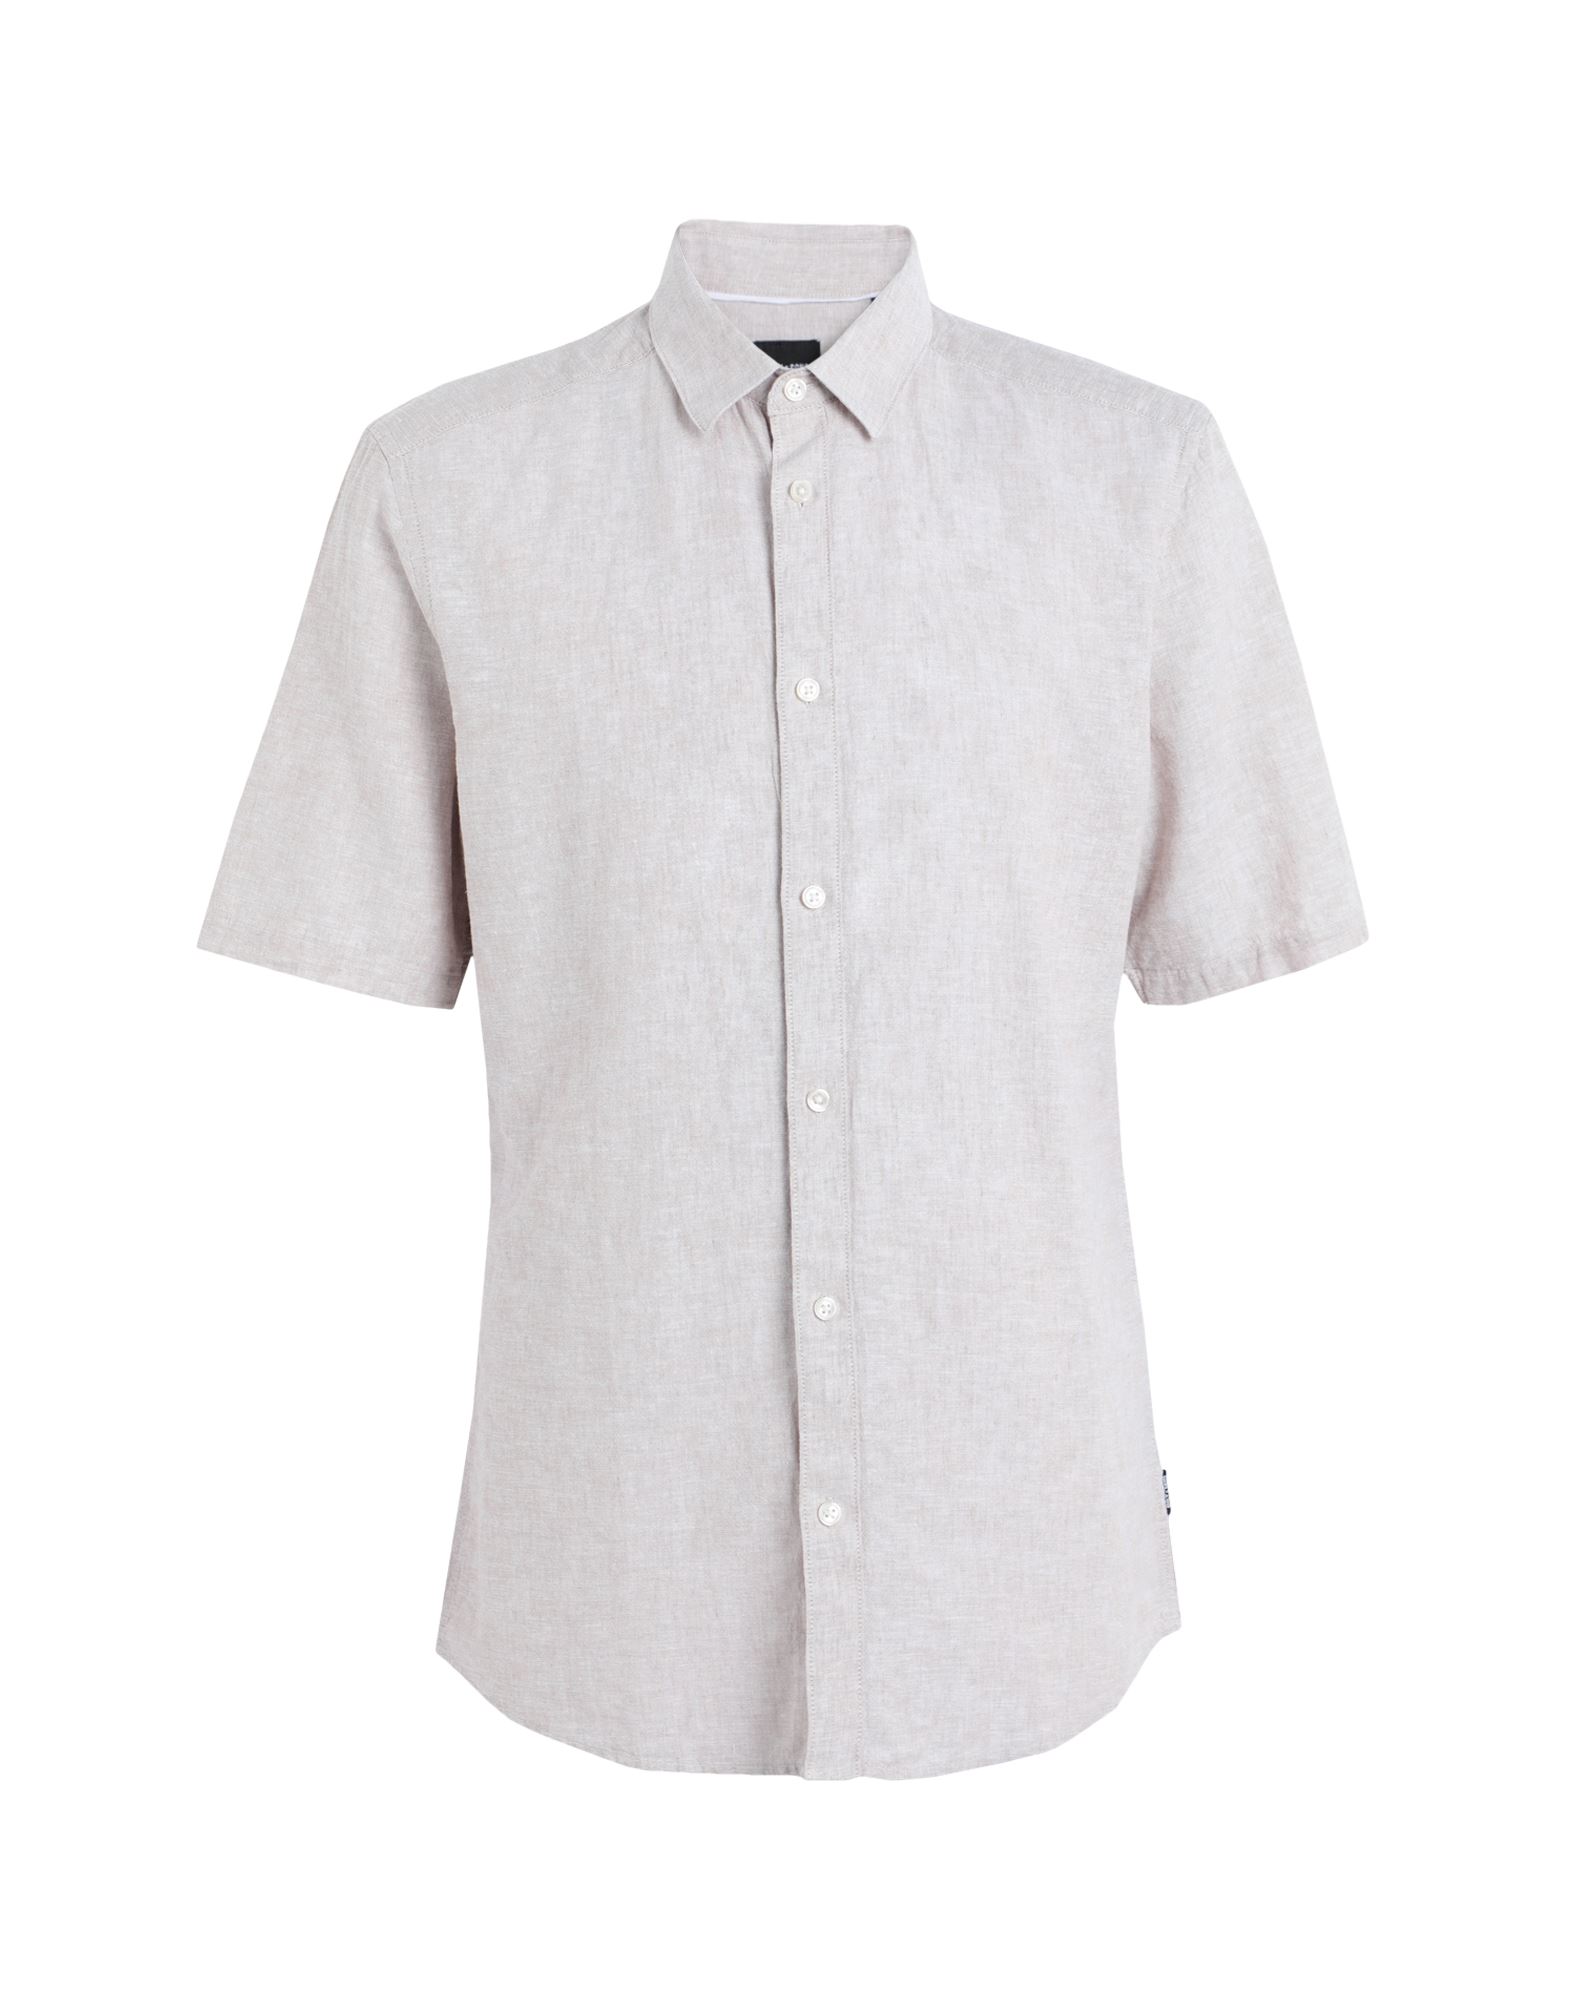 Shop Only & Sons Man Shirt Beige Size S Cotton, Linen